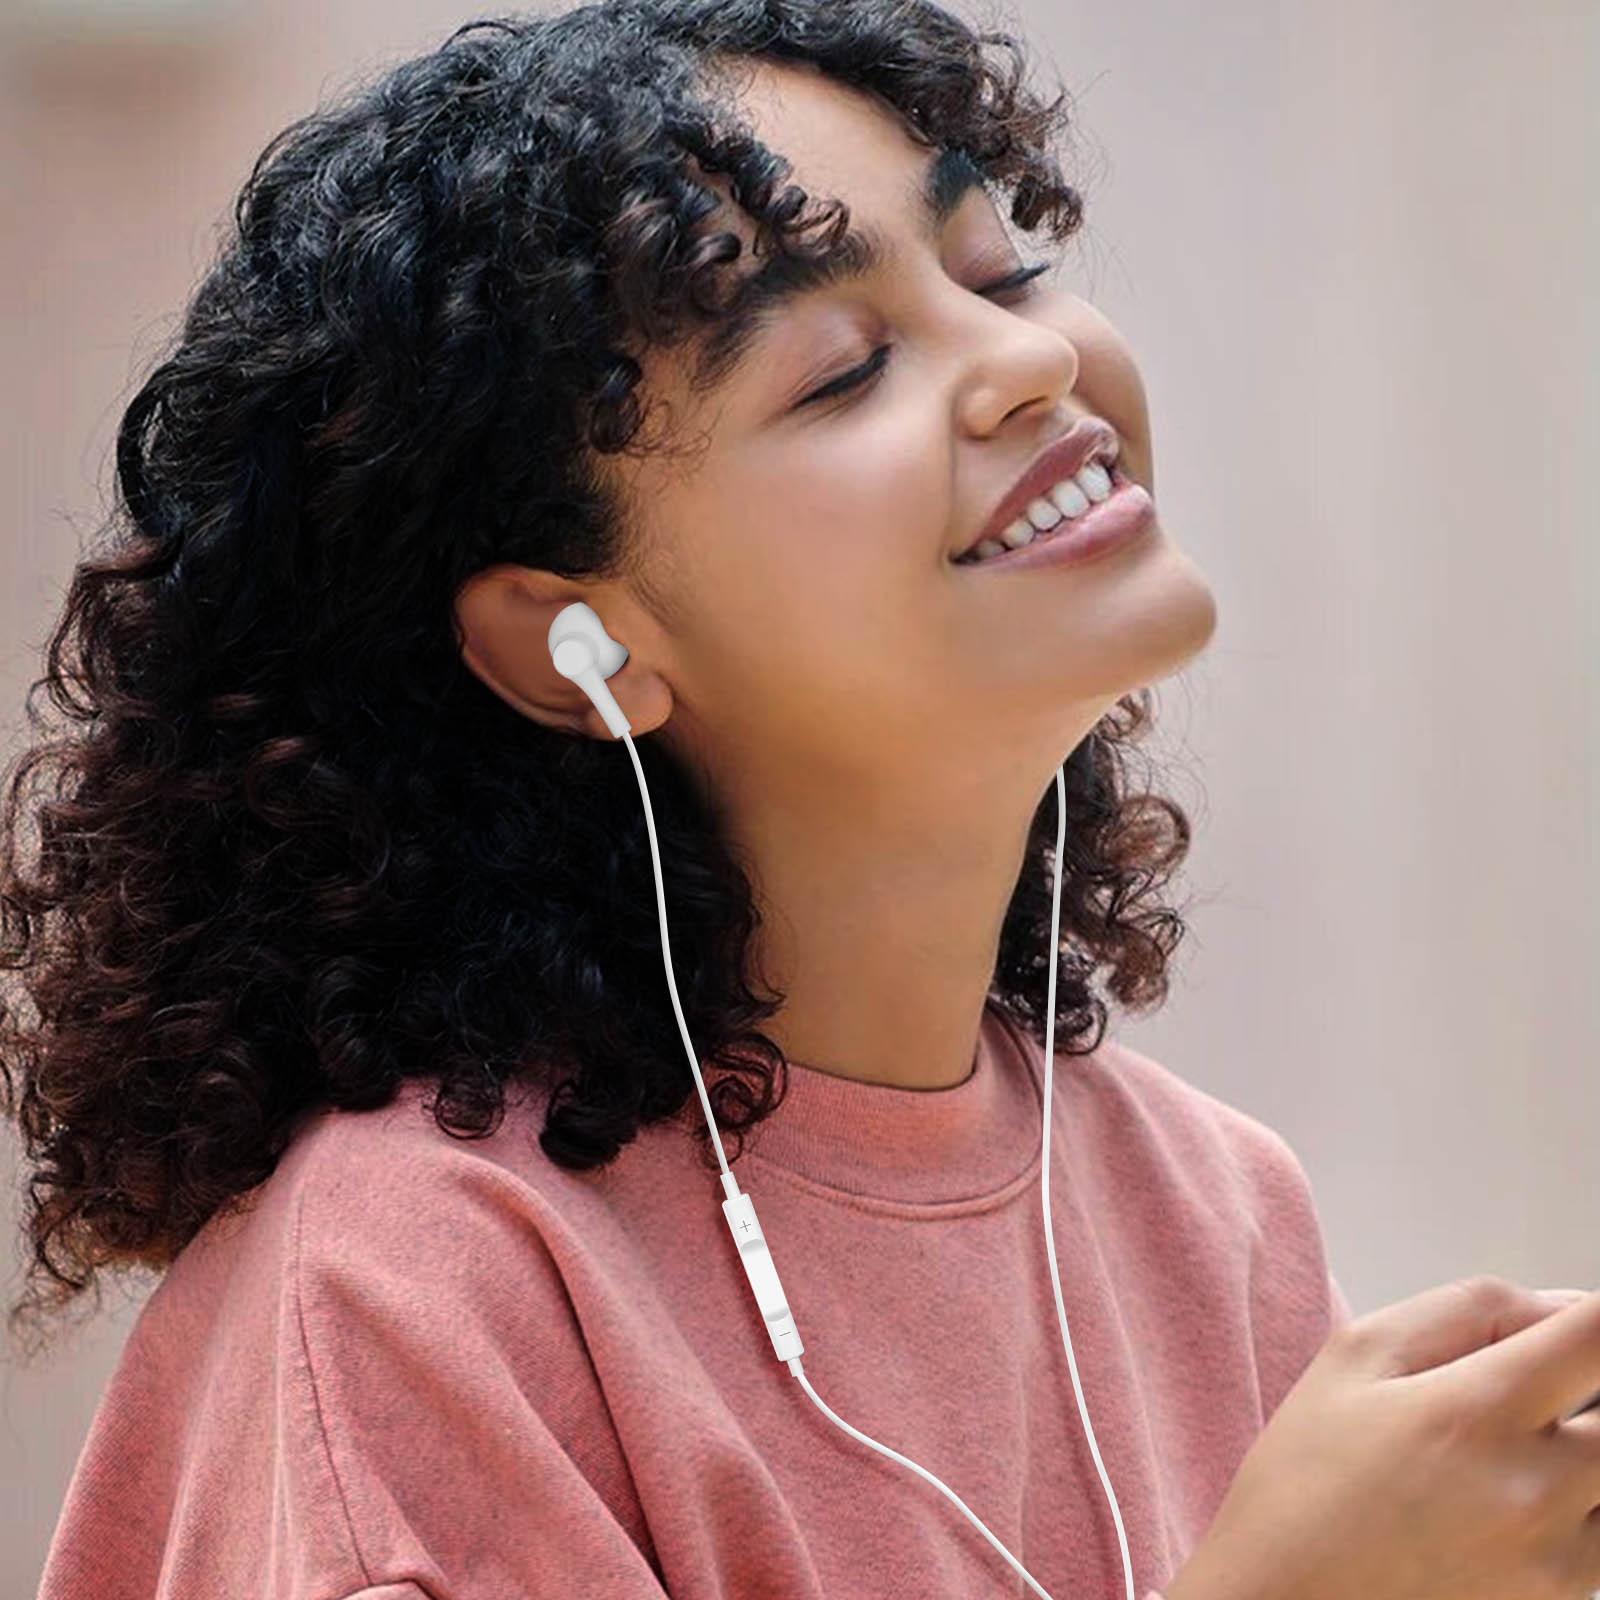 Écouteurs filaires Lightning pour iPhone Buds Ears Ecouteur